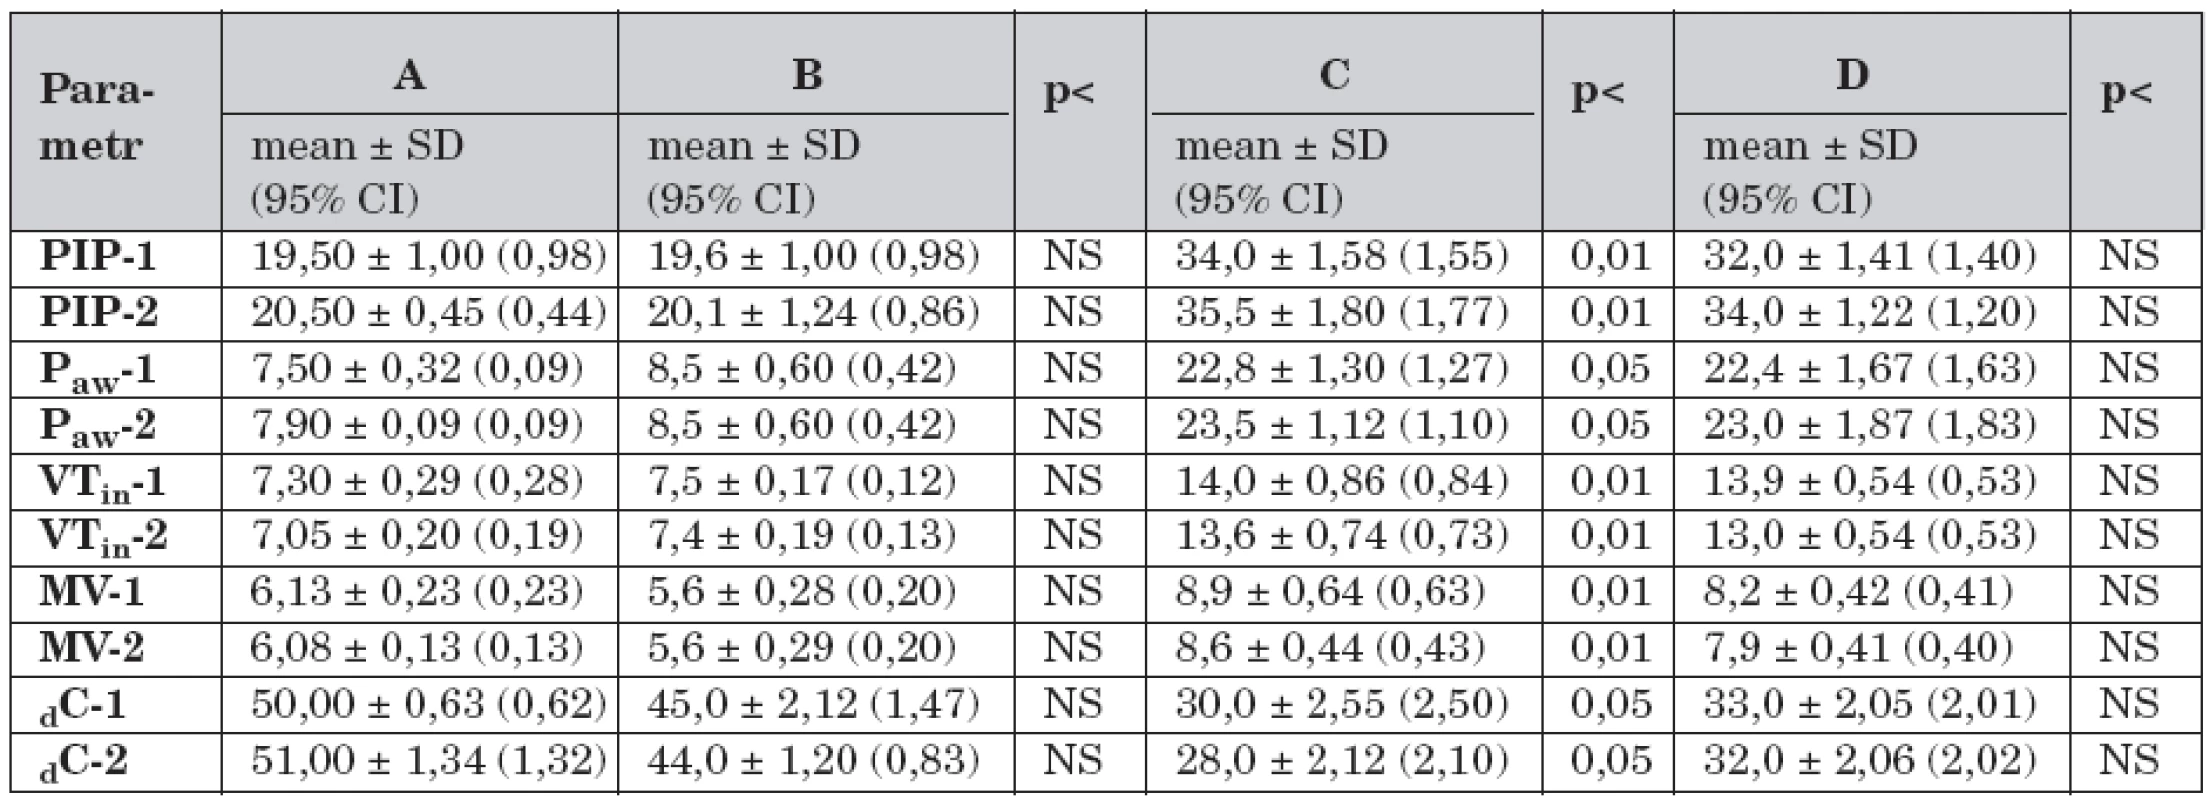 Dynamická plicní mechanika a rozdíly mezi skupinami A – D v průběhu studie (n = 40).